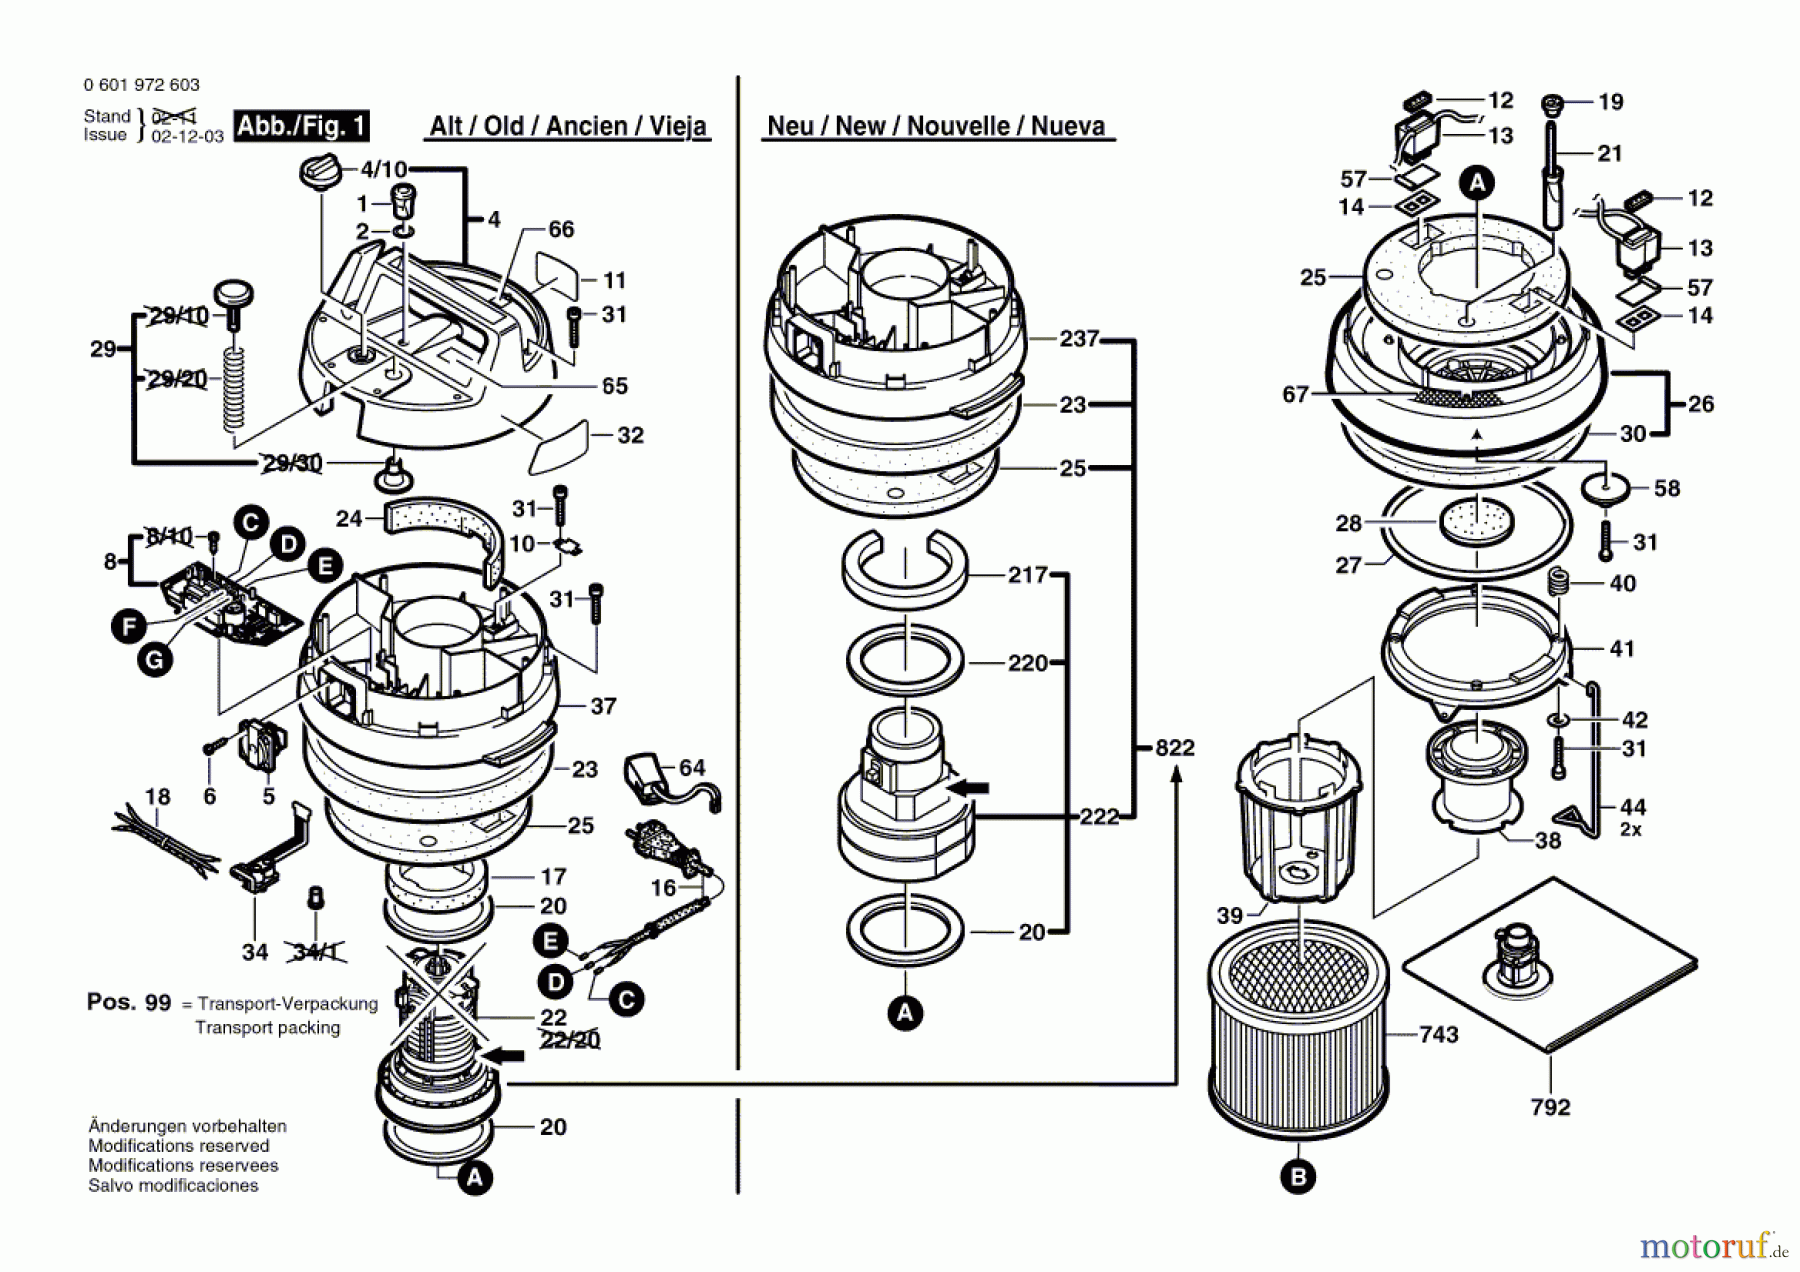  Bosch Werkzeug Allzwecksauger GAS 10-50 RFK Seite 1